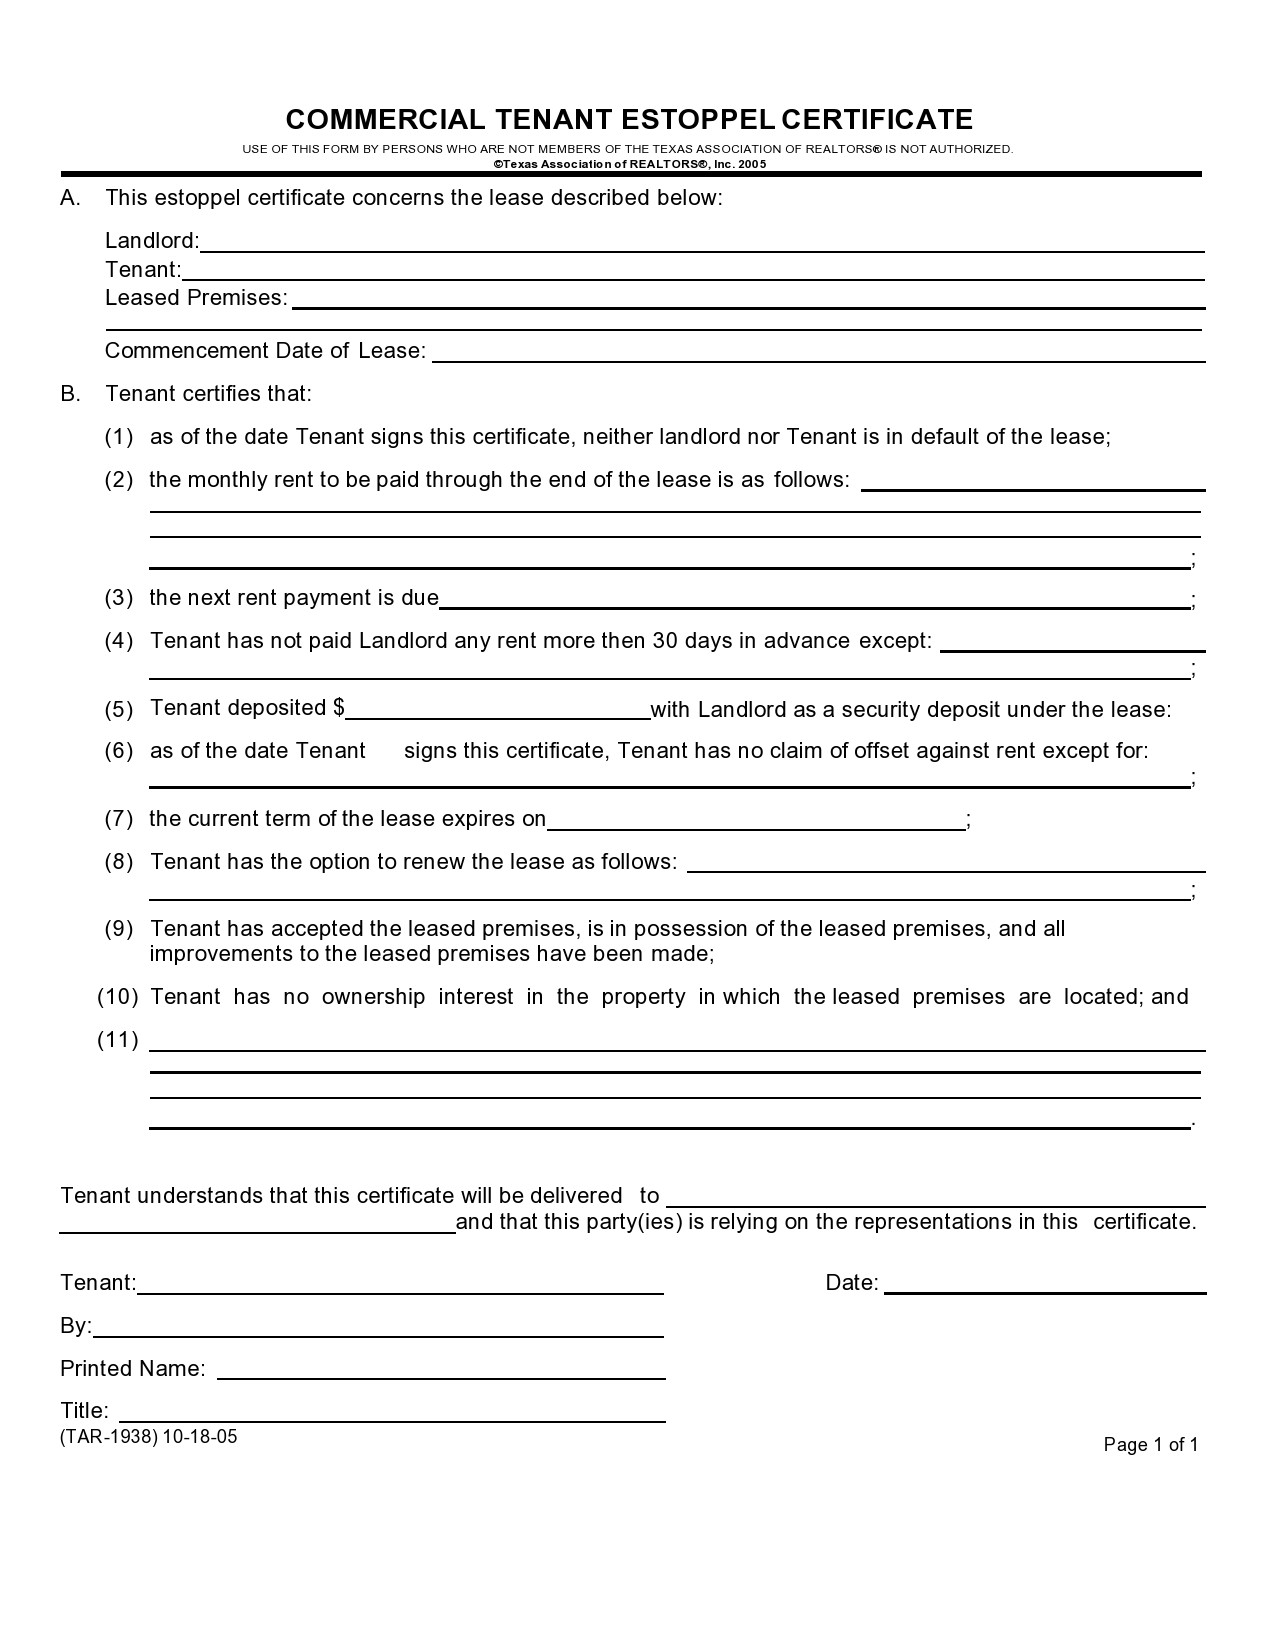 Free estoppel certificate form 09